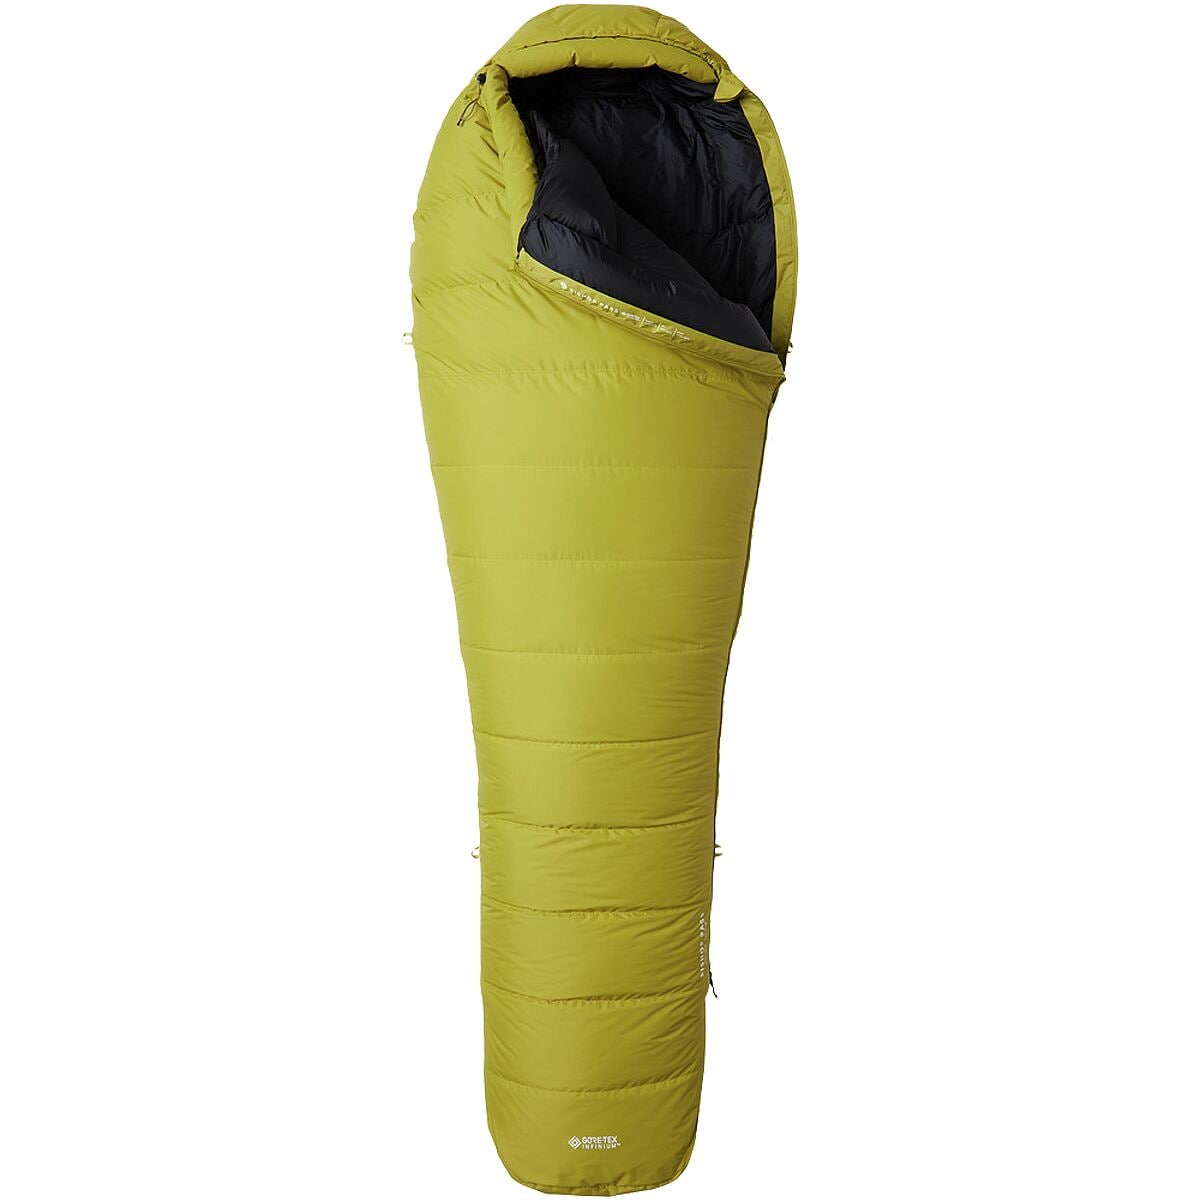 Mountain Hardwear Bishop Pass GORE-TEX Sleeping Bag: 0F Down